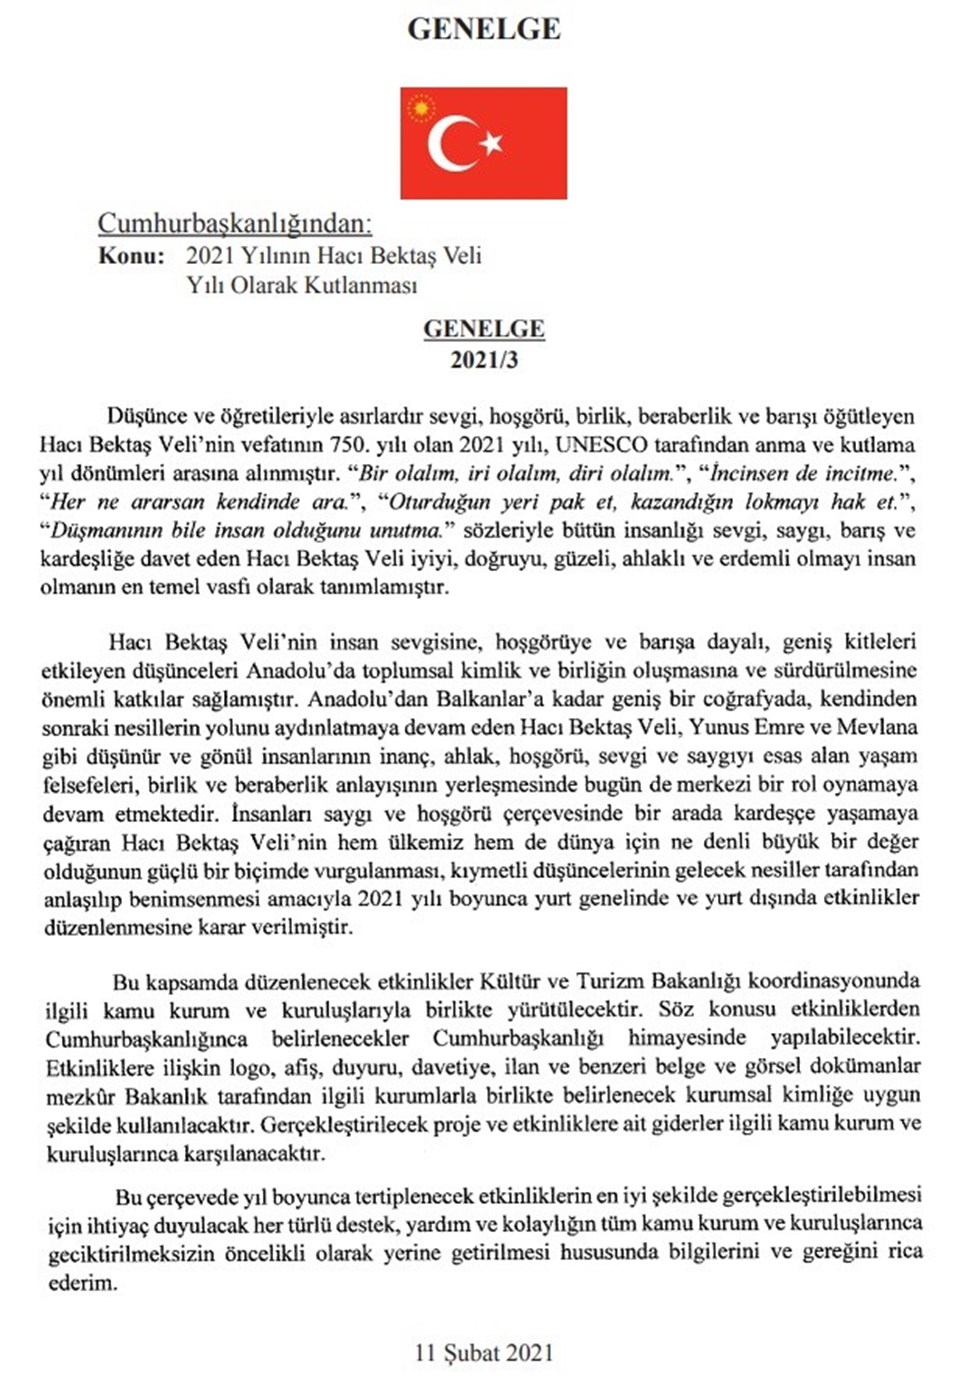 Cumhurbaşkanı Erdoğan'dan '2021 Hacı Bektaş Veli Yılı' genelgesi - 1